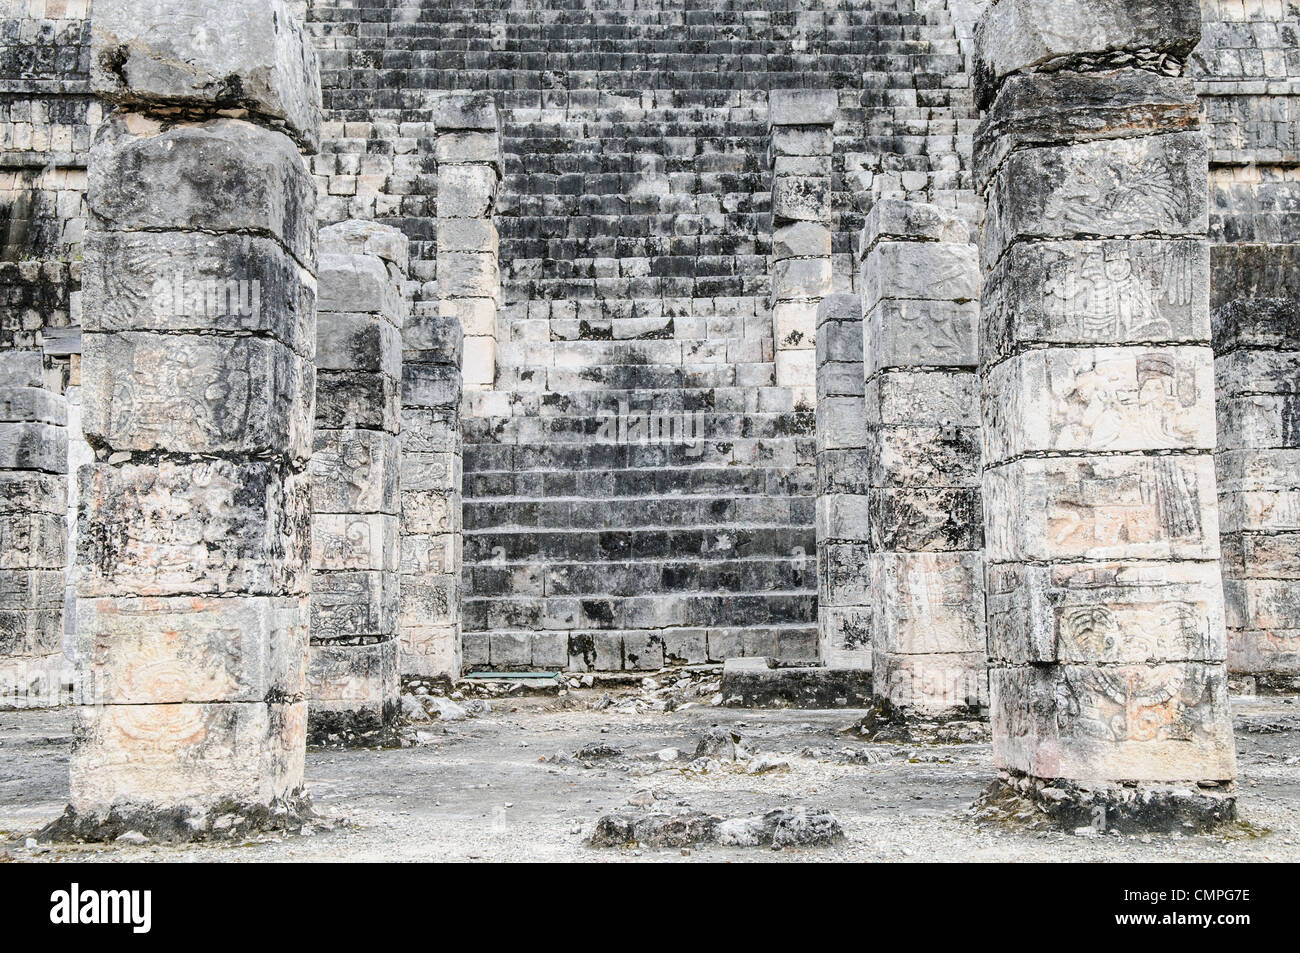 CHICHEN ITZA, Mexique - étapes et piliers de pierre à la zone archéologique de Chichen Itza dans le centre du Yucatan, une ancienne ville maya et l'un des plus célèbres sites de la civilisation maya. Chichen Itza, situé sur la péninsule du Yucatan au Mexique, est un site archéologique important présentant la riche histoire et les connaissances scientifiques avancées de la civilisation maya antique. Il est plus connu pour la Pyramide Kukulkan, ou « El Castillo », une structure à quatre côtés avec 91 marches de chaque côté, culminant en une seule étape au sommet pour représenter les 365 jours de l'année solaire. Banque D'Images